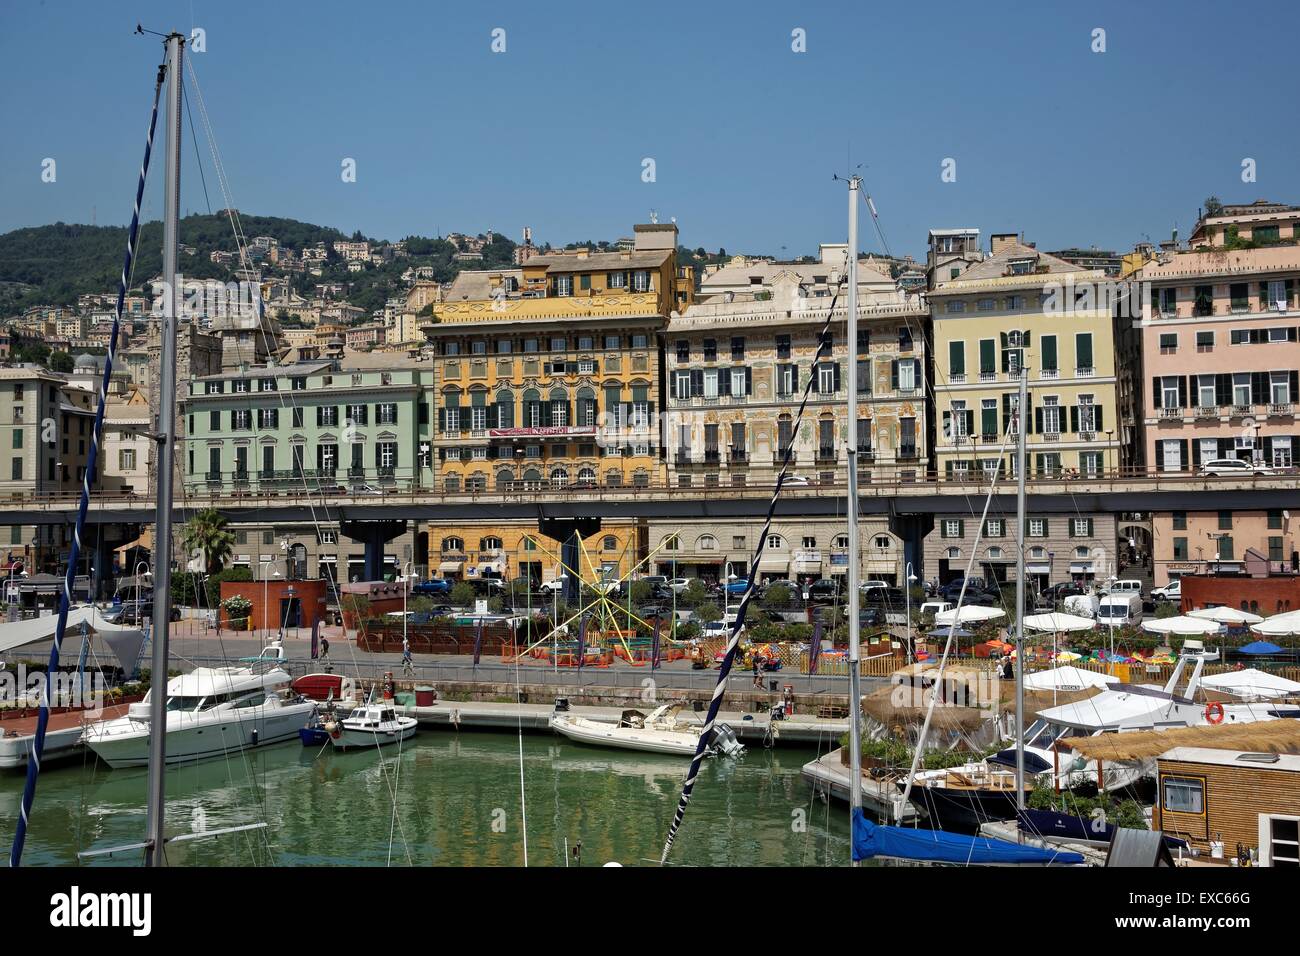 Genoa's Old Port - Porto antico di Genova Stock Photo